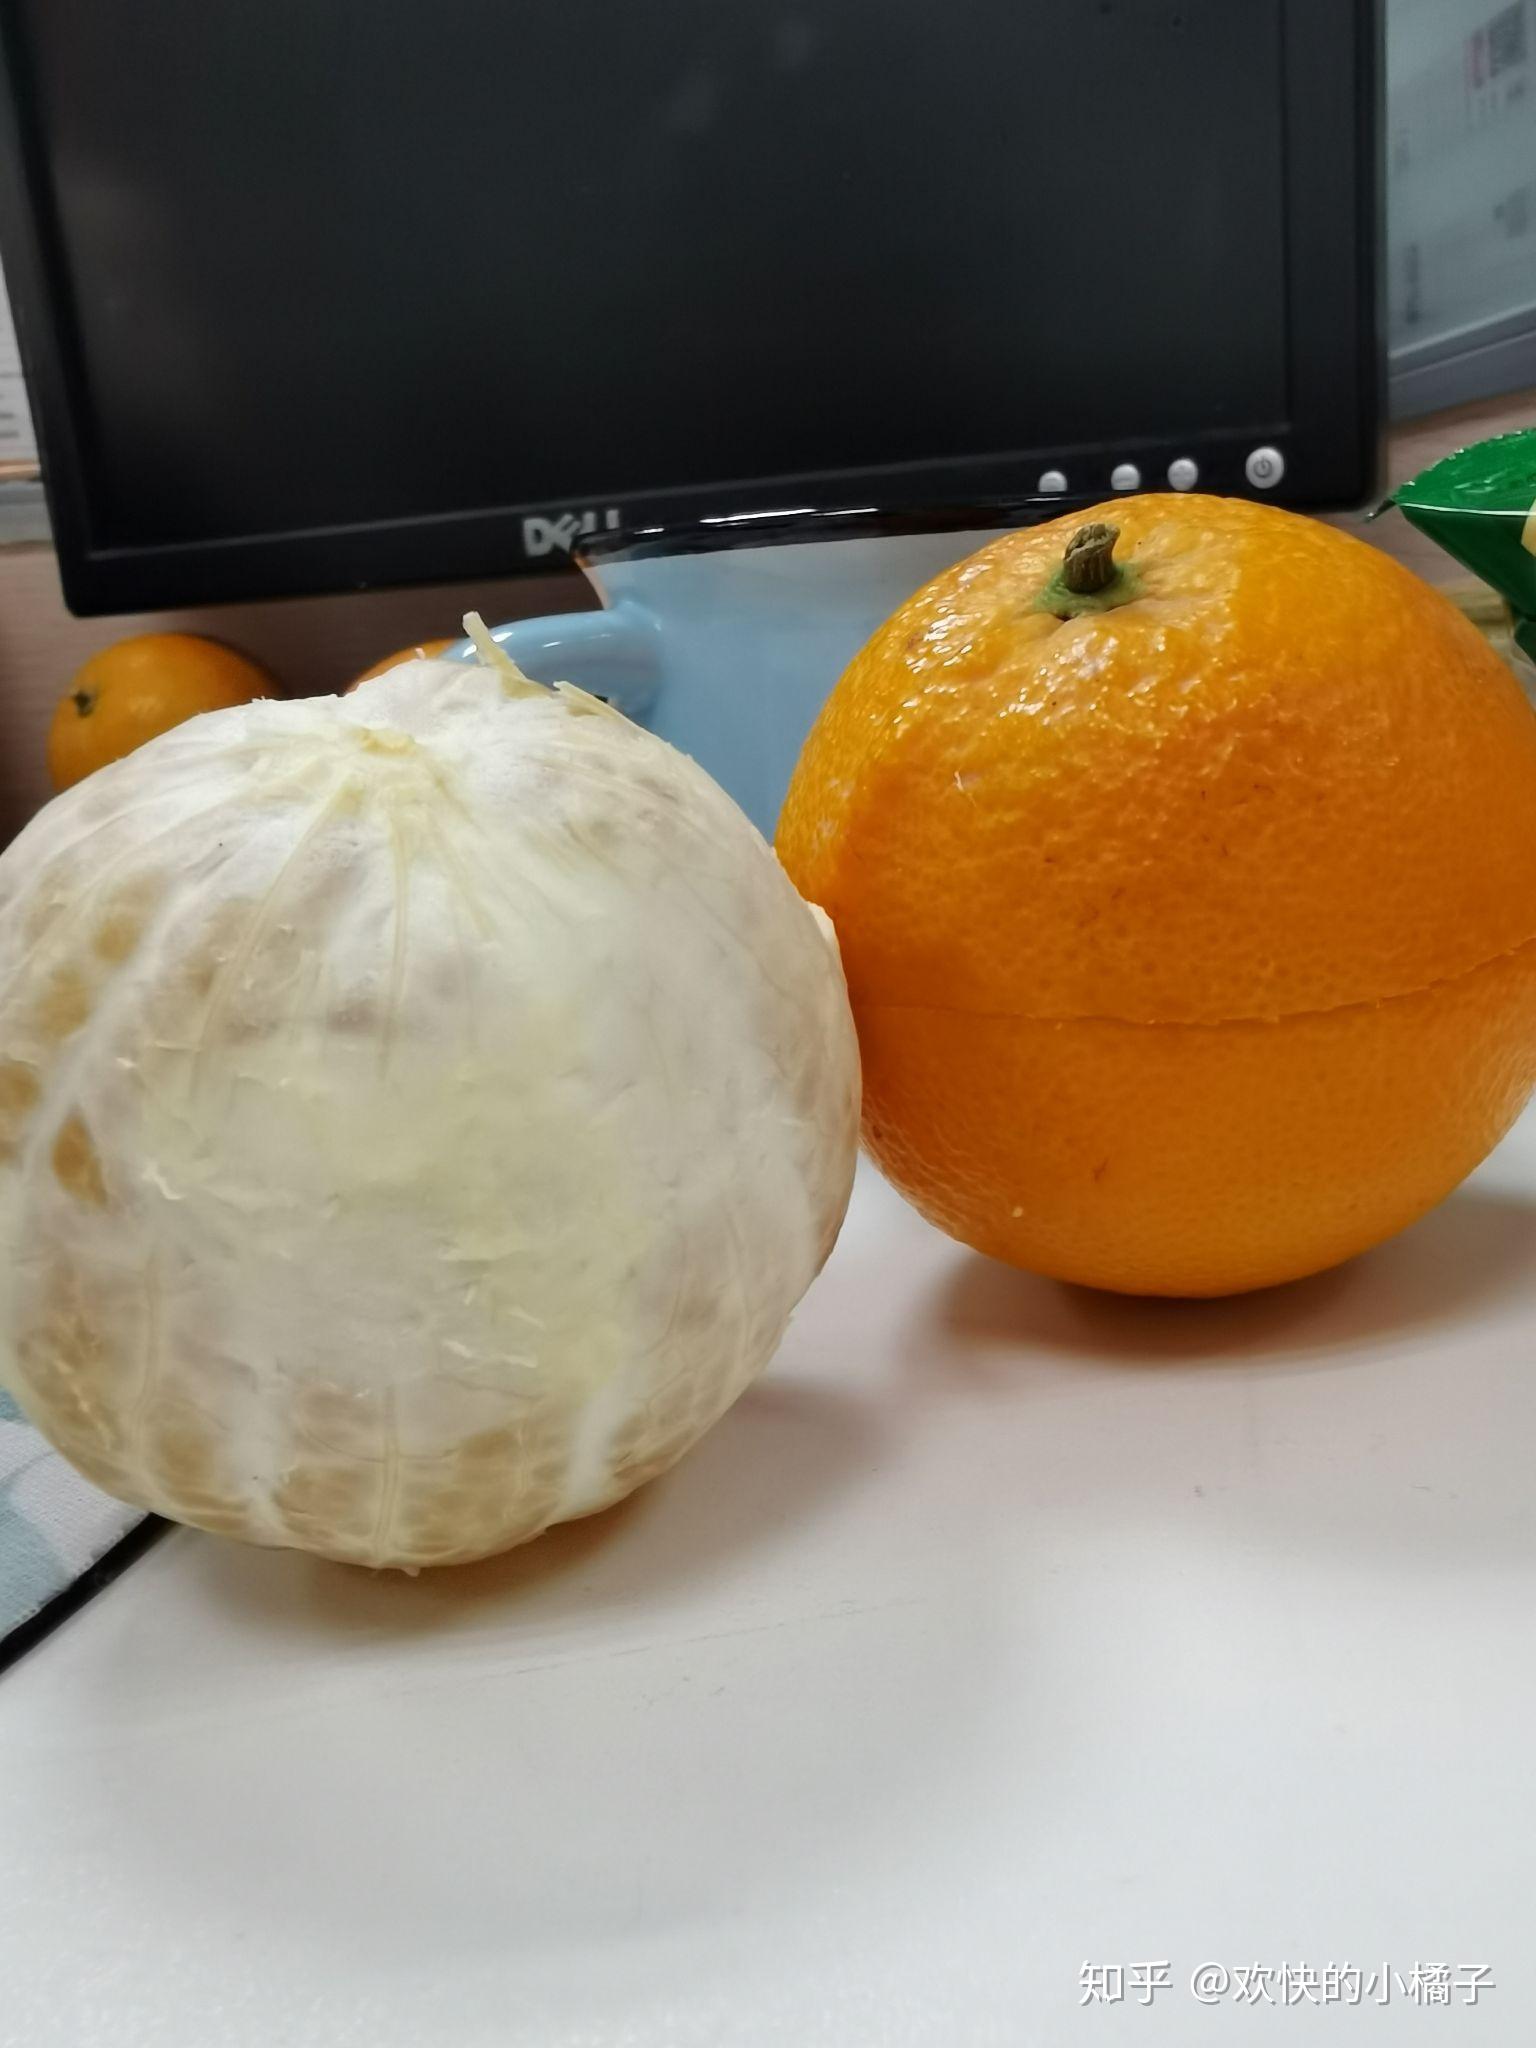 你们觉得赣南脐橙应该怎么剥? 